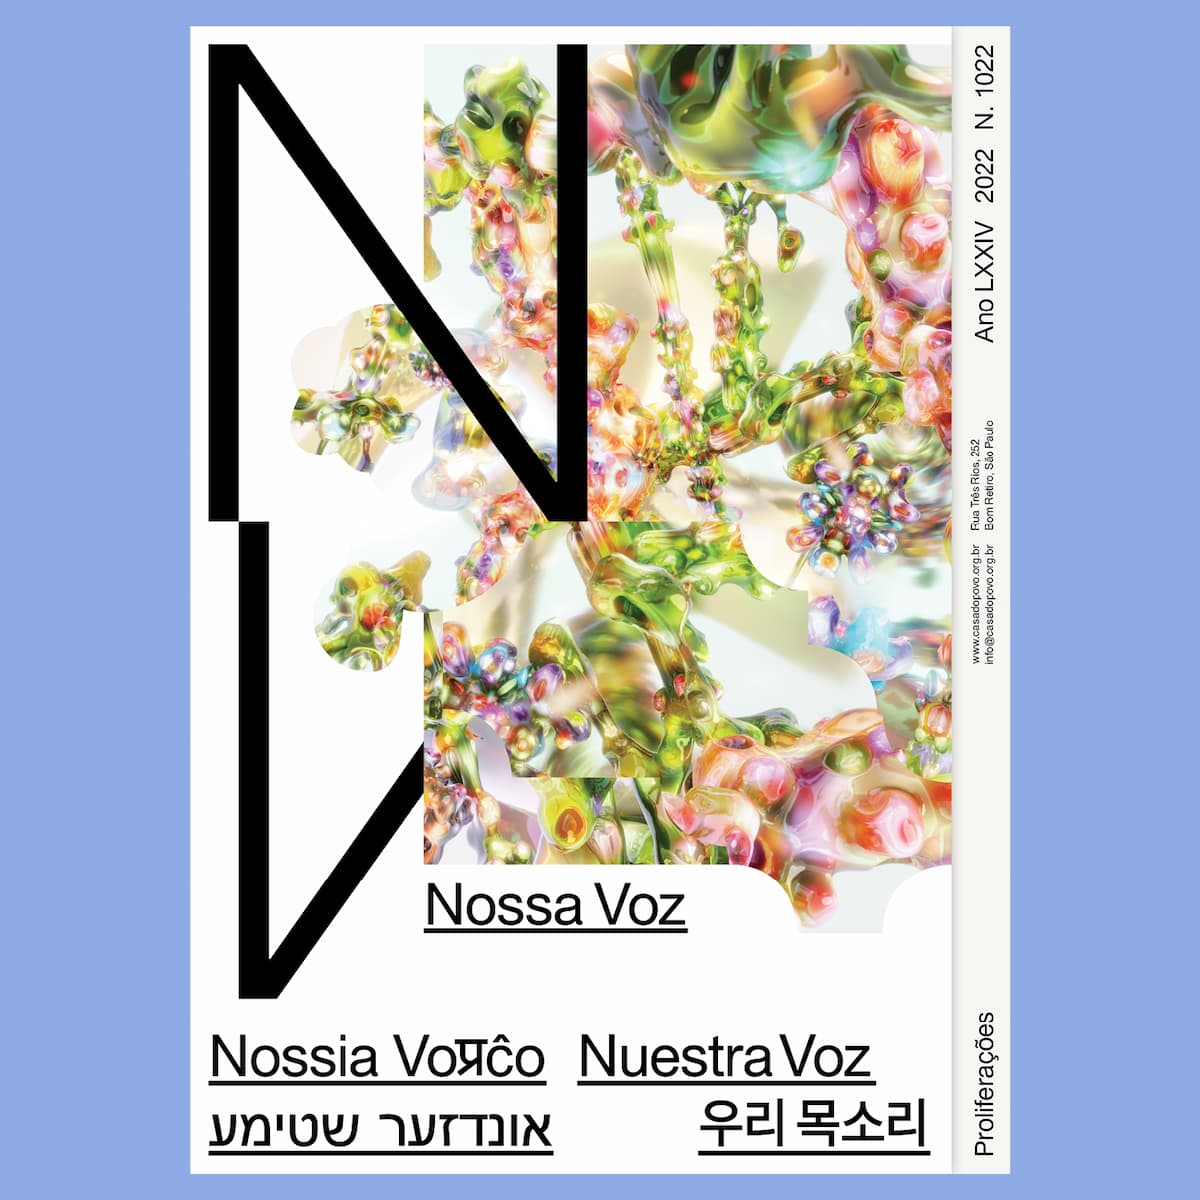 Casa do Povo запускает ежегодный выпуск издания Nossa Voz, Обложка 2022. Раскрытие.